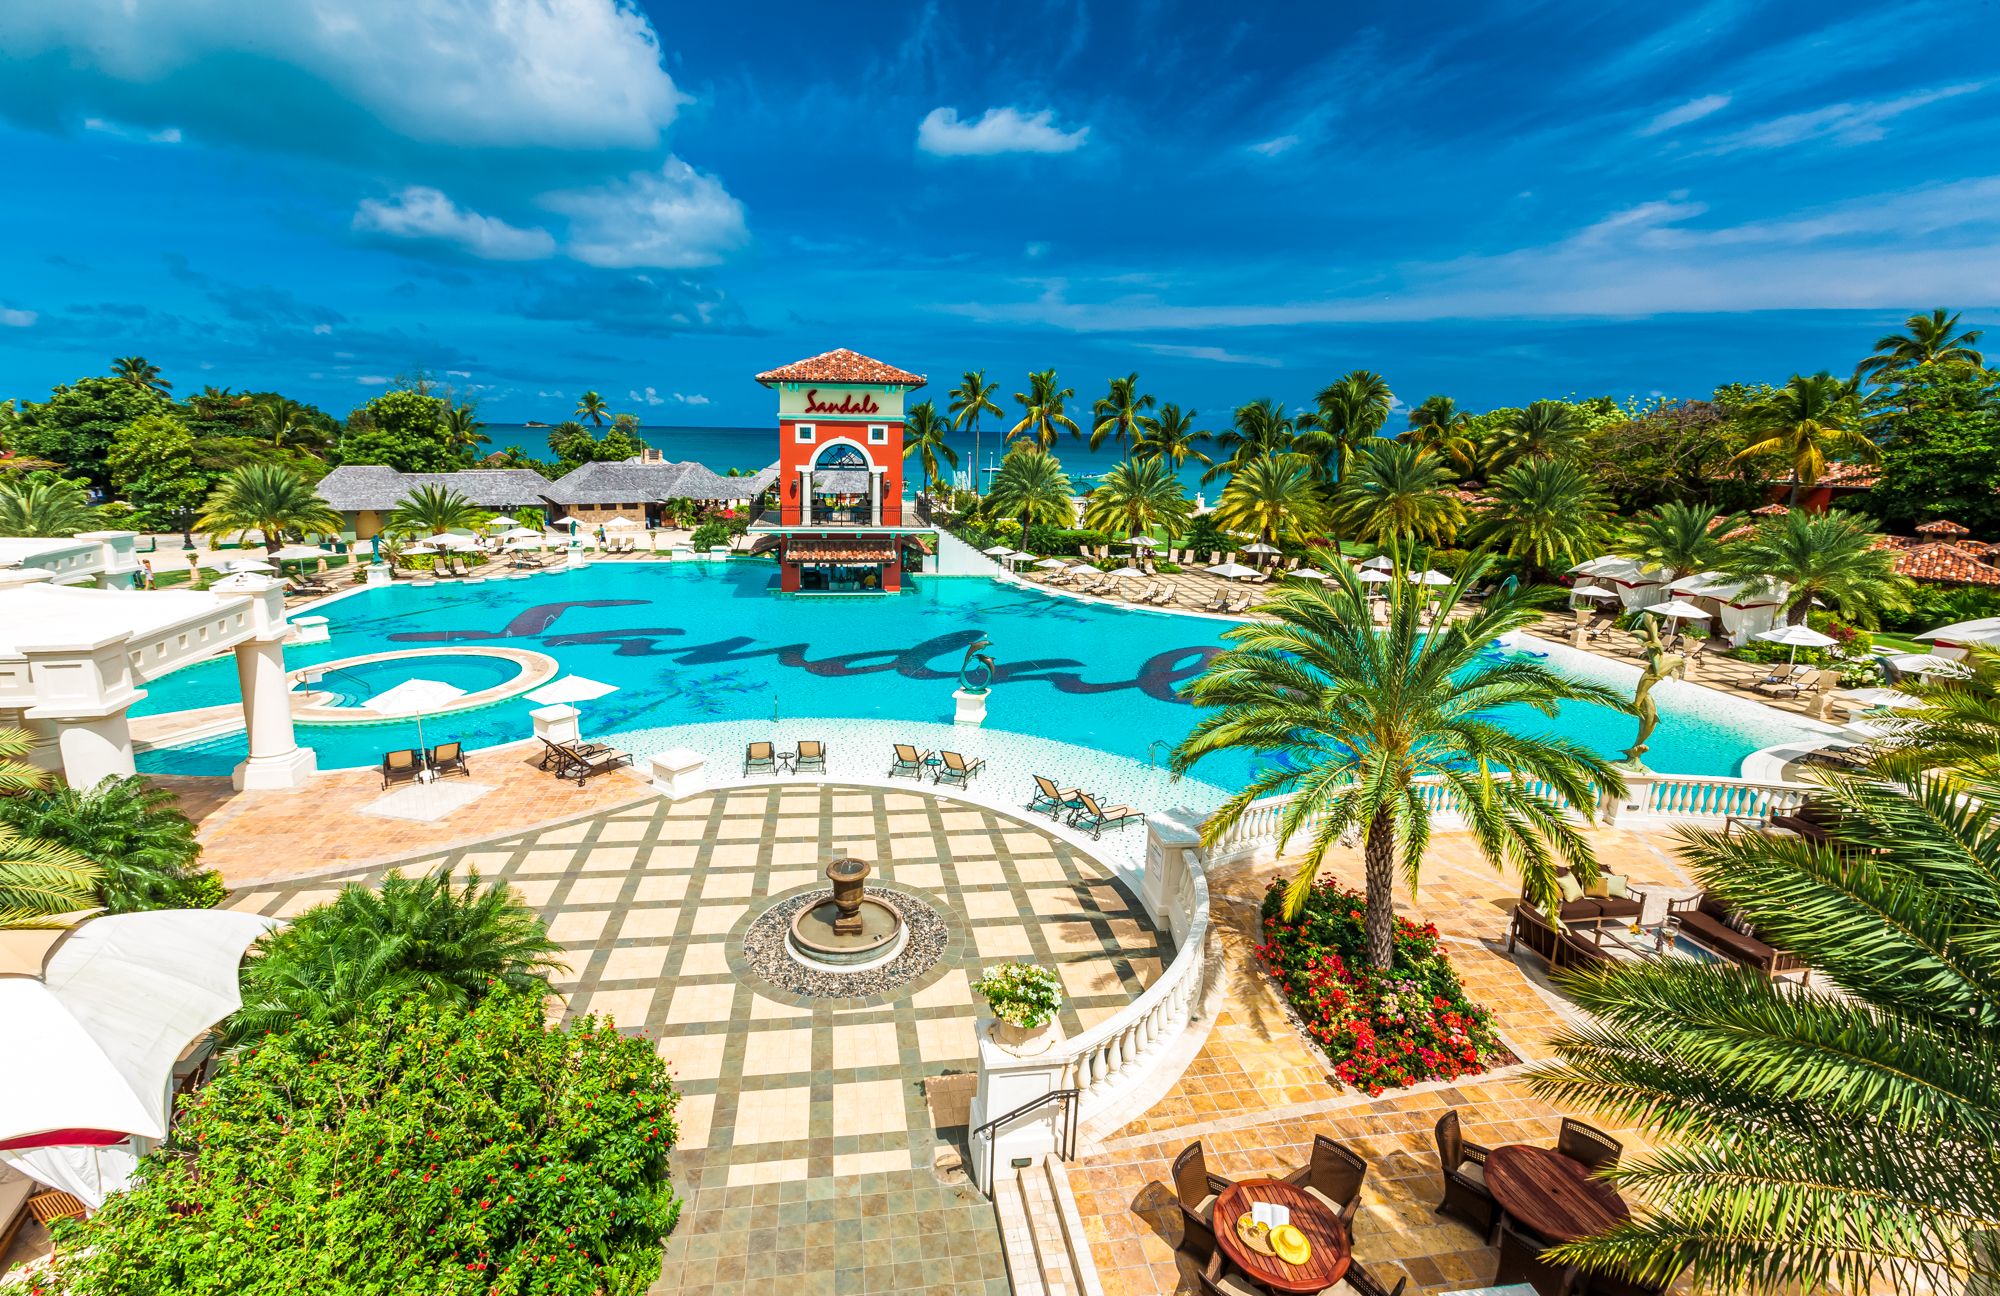 Sandals Grande Antigua Resort Overview